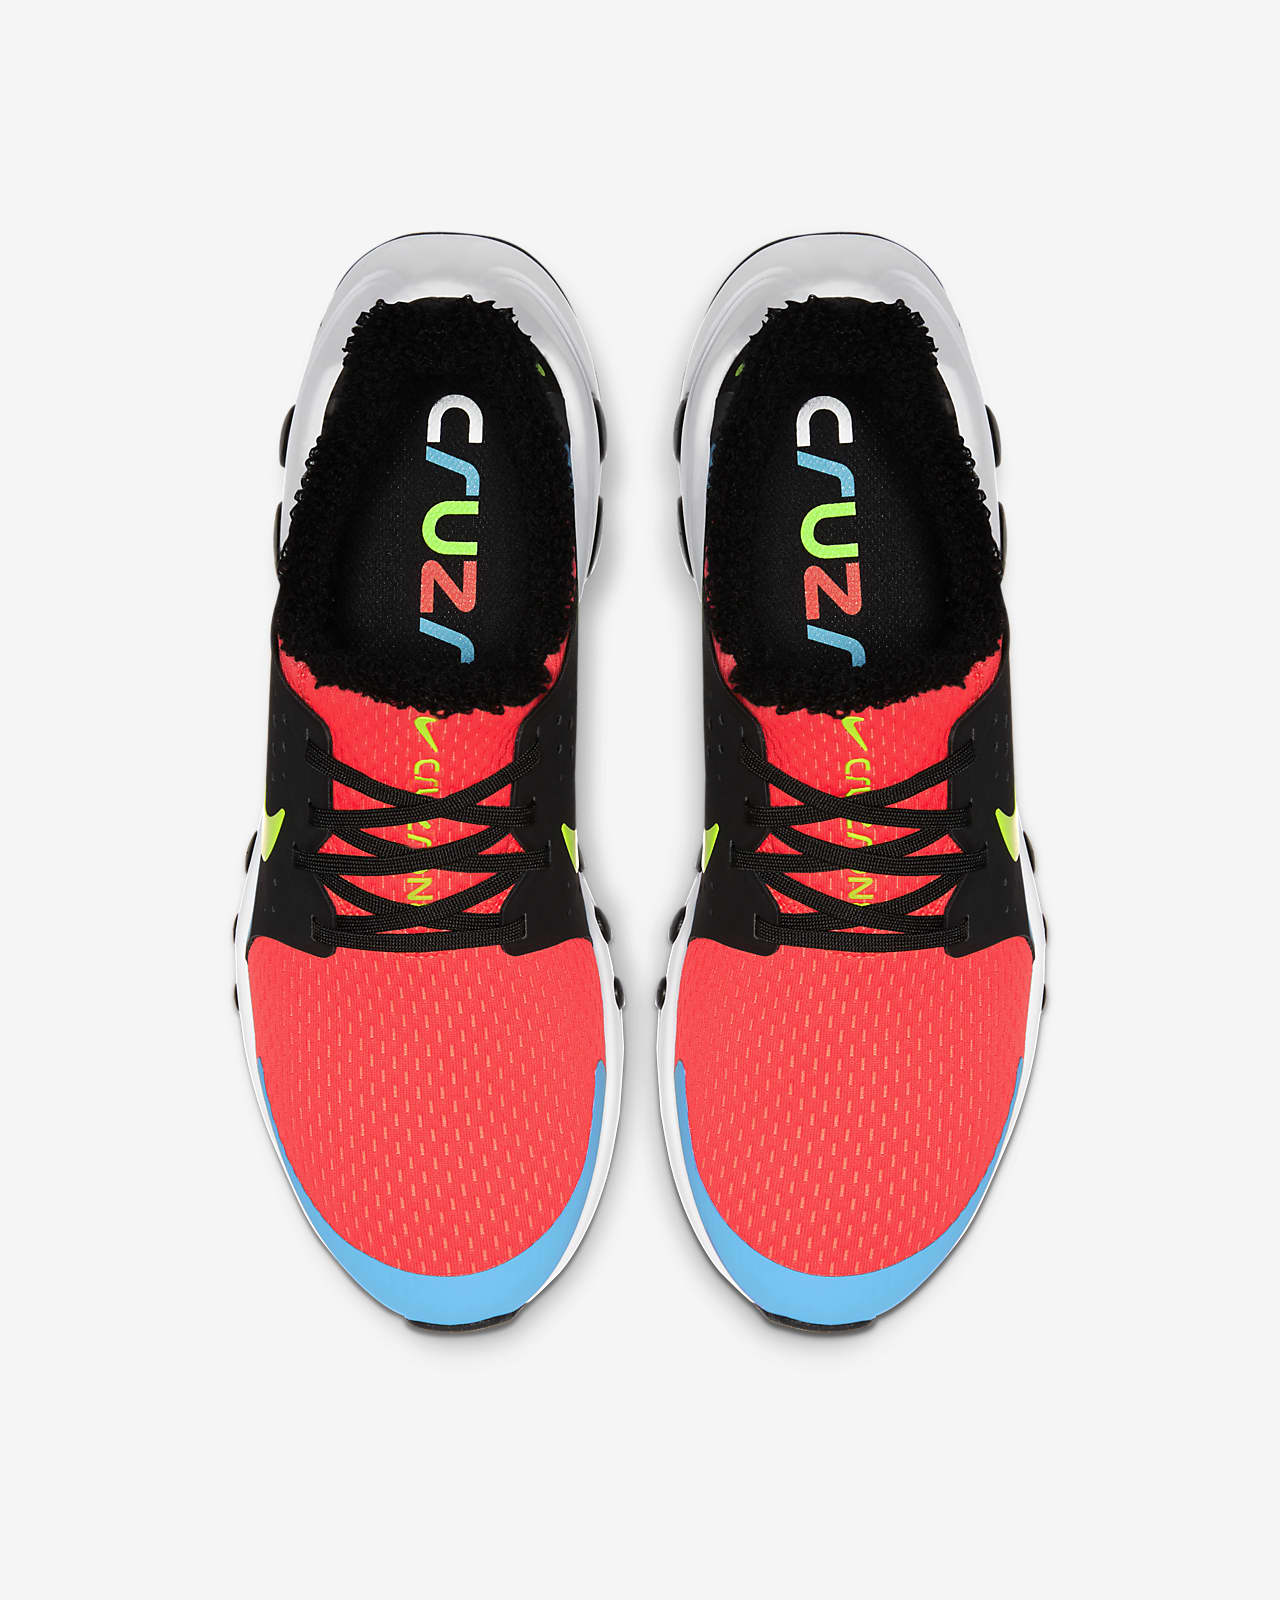 Scarpa Nike CruzrOne (Bright Crimson 